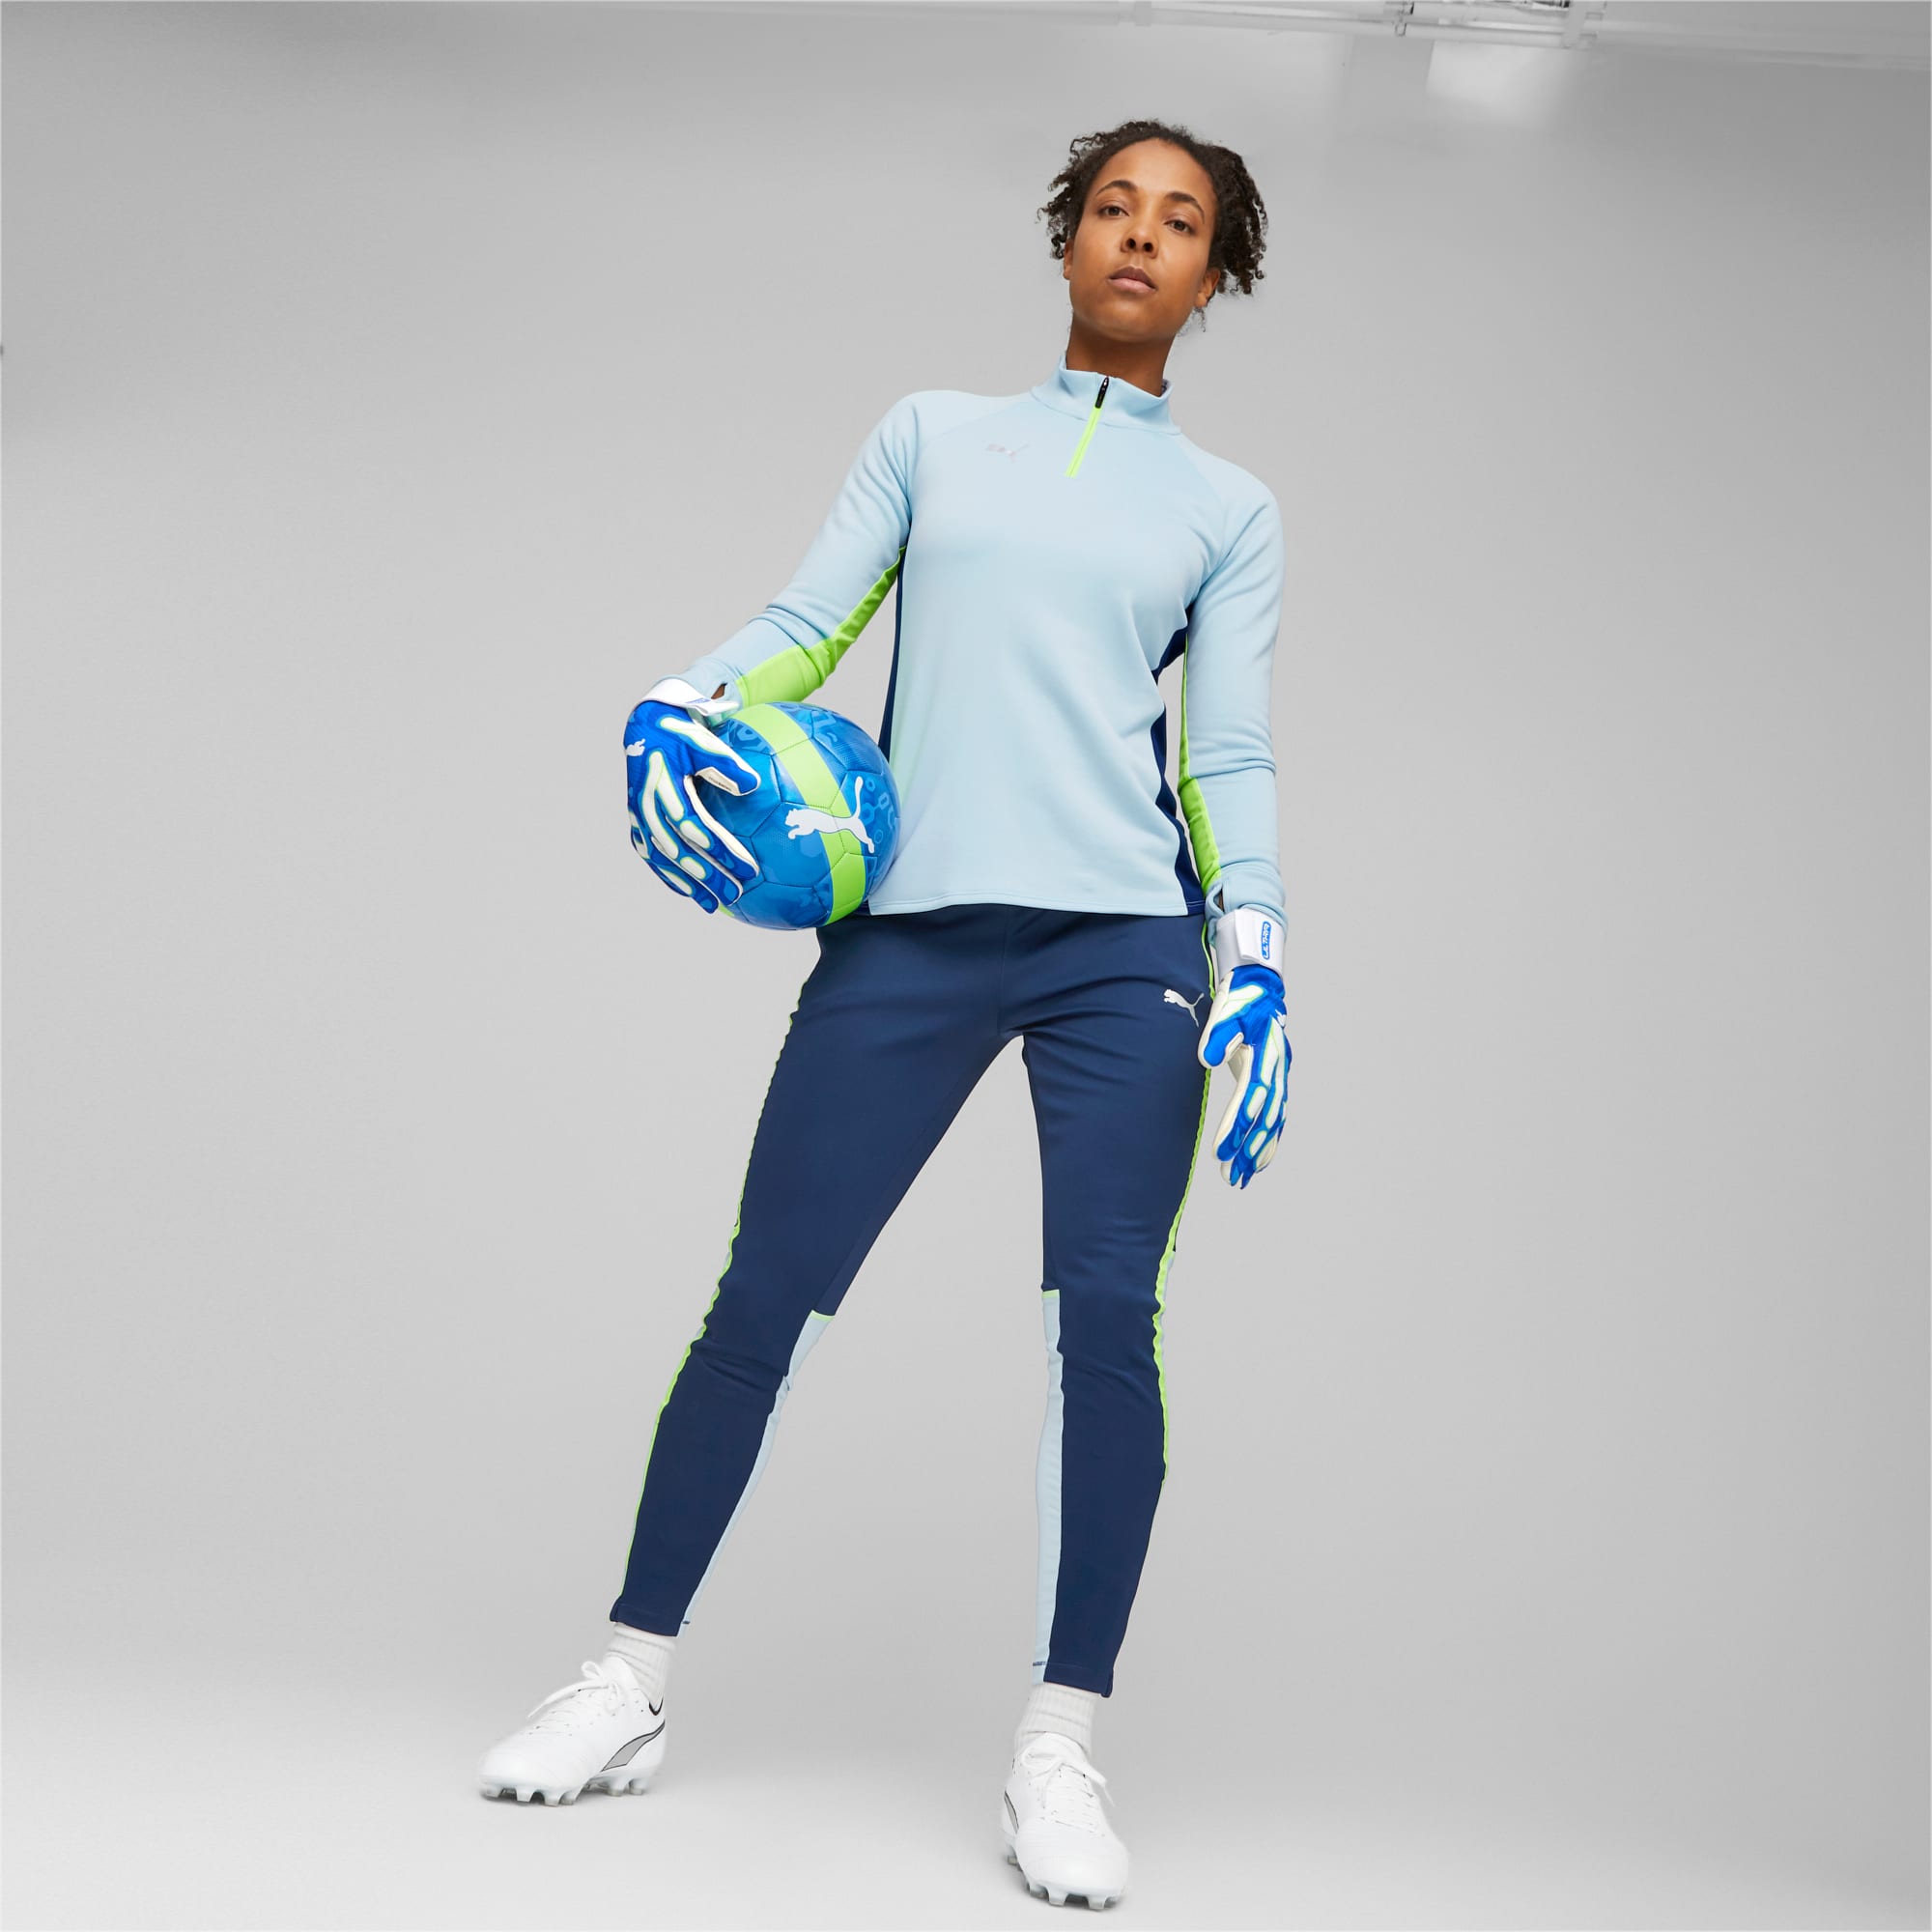 PUMA ULTRA Ultimate Hybrid keepershandschoenen voor Dames, Blauw/Wit